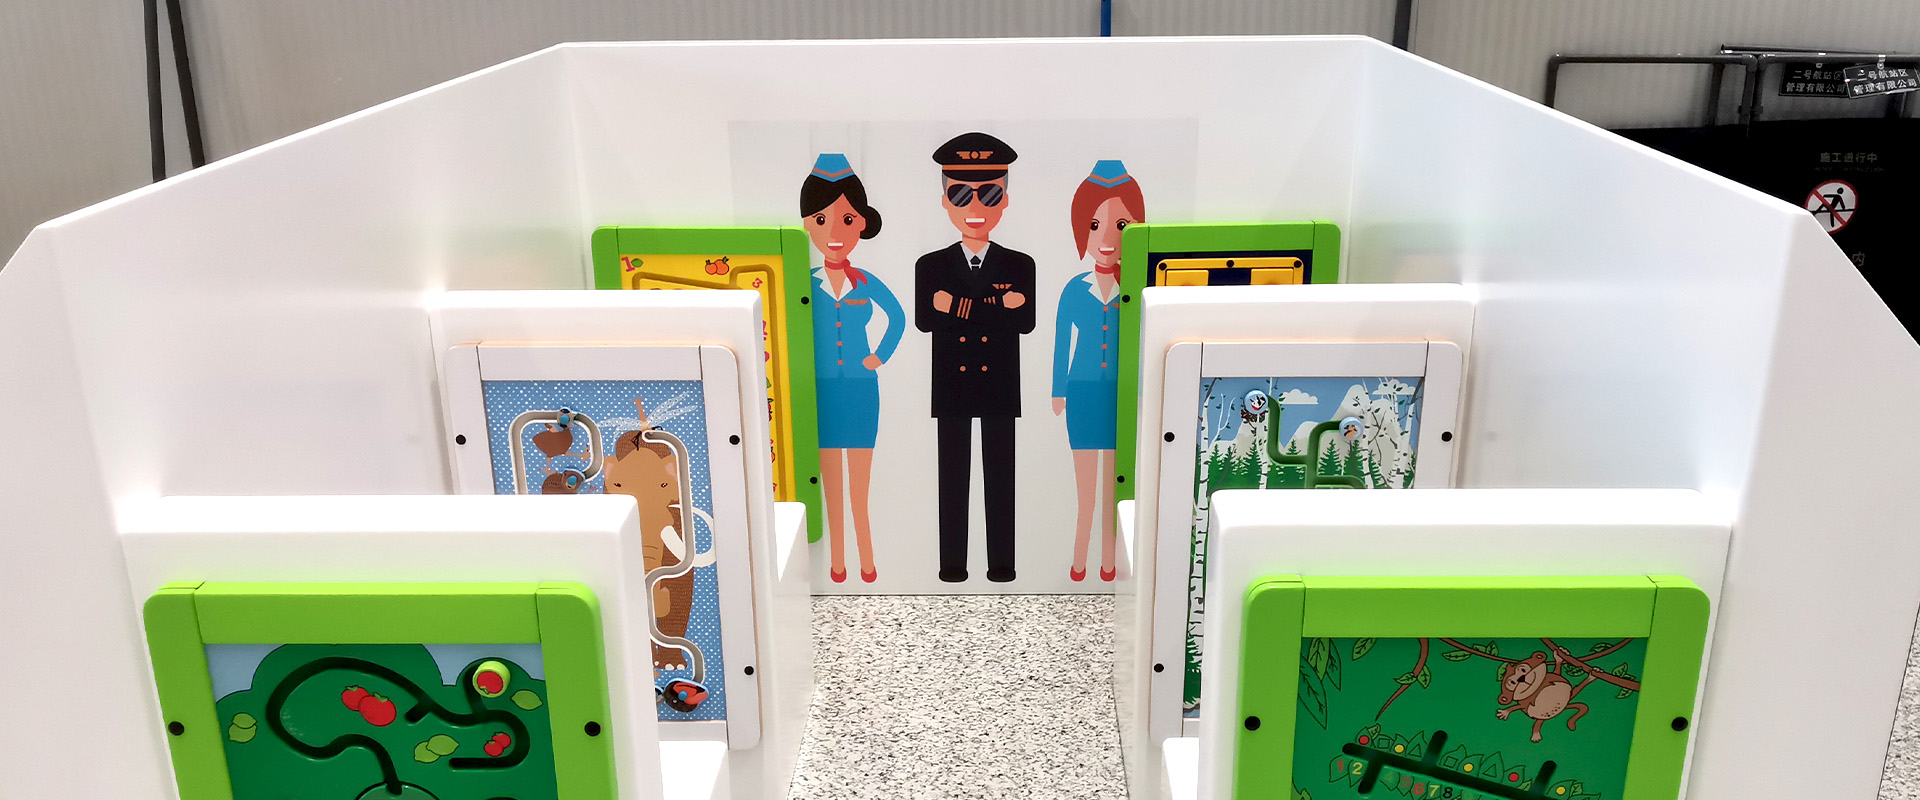 speelhoek voor kinderen met vliegveld thema